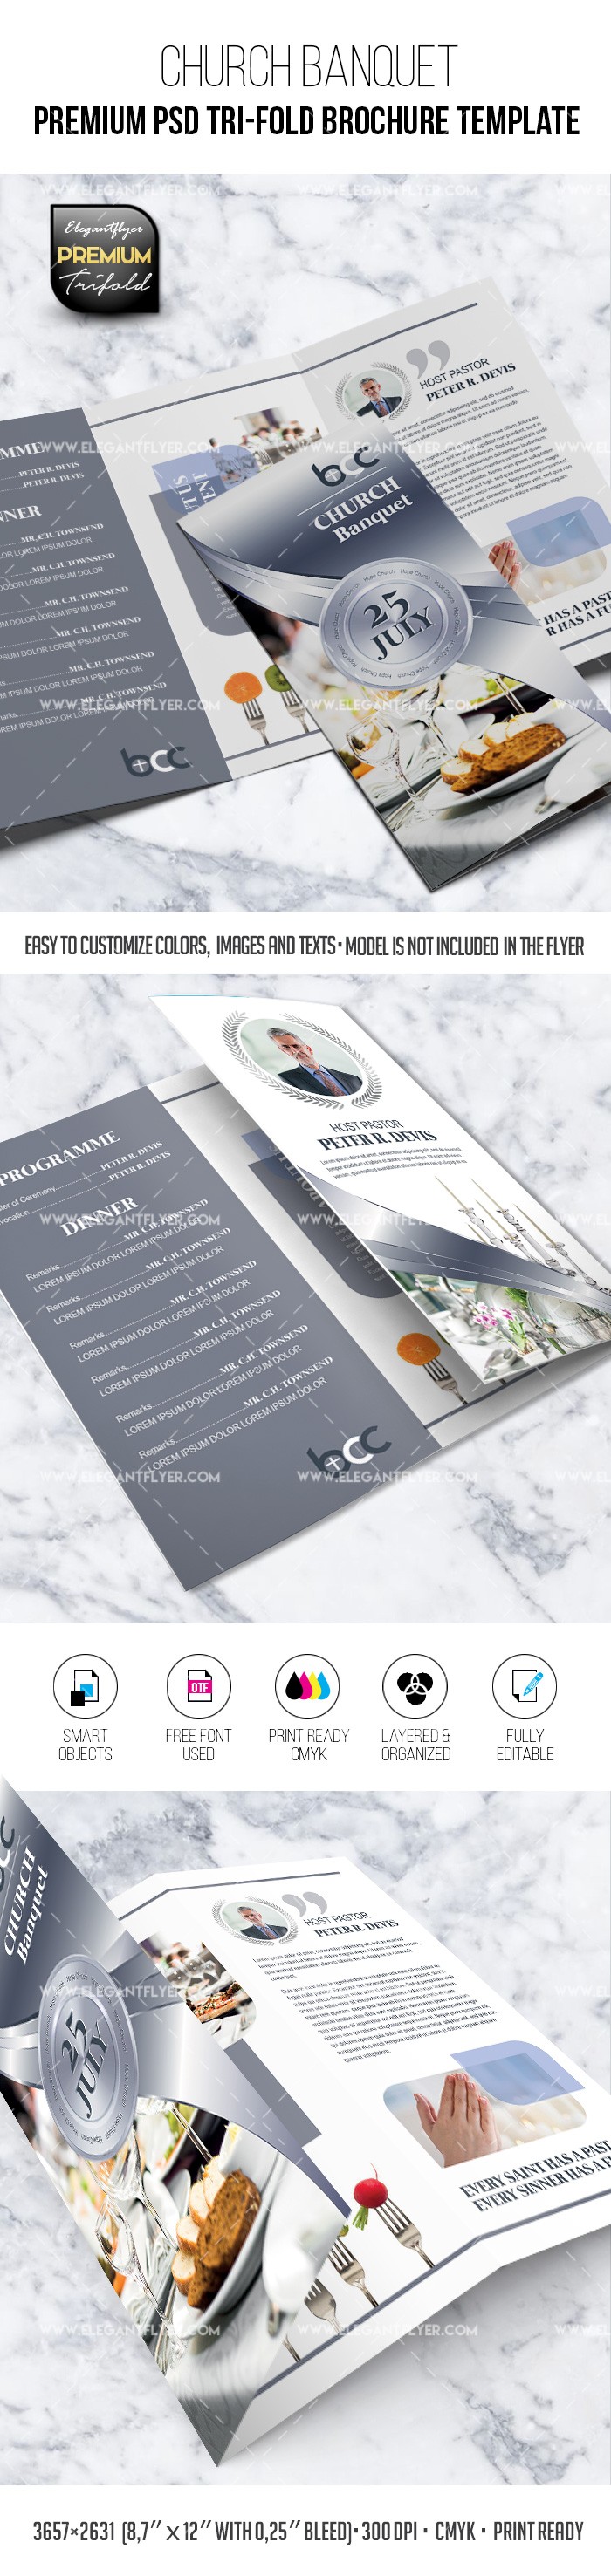 Banquet d'église - Modèle de brochure PSD premium à trois volets by ElegantFlyer